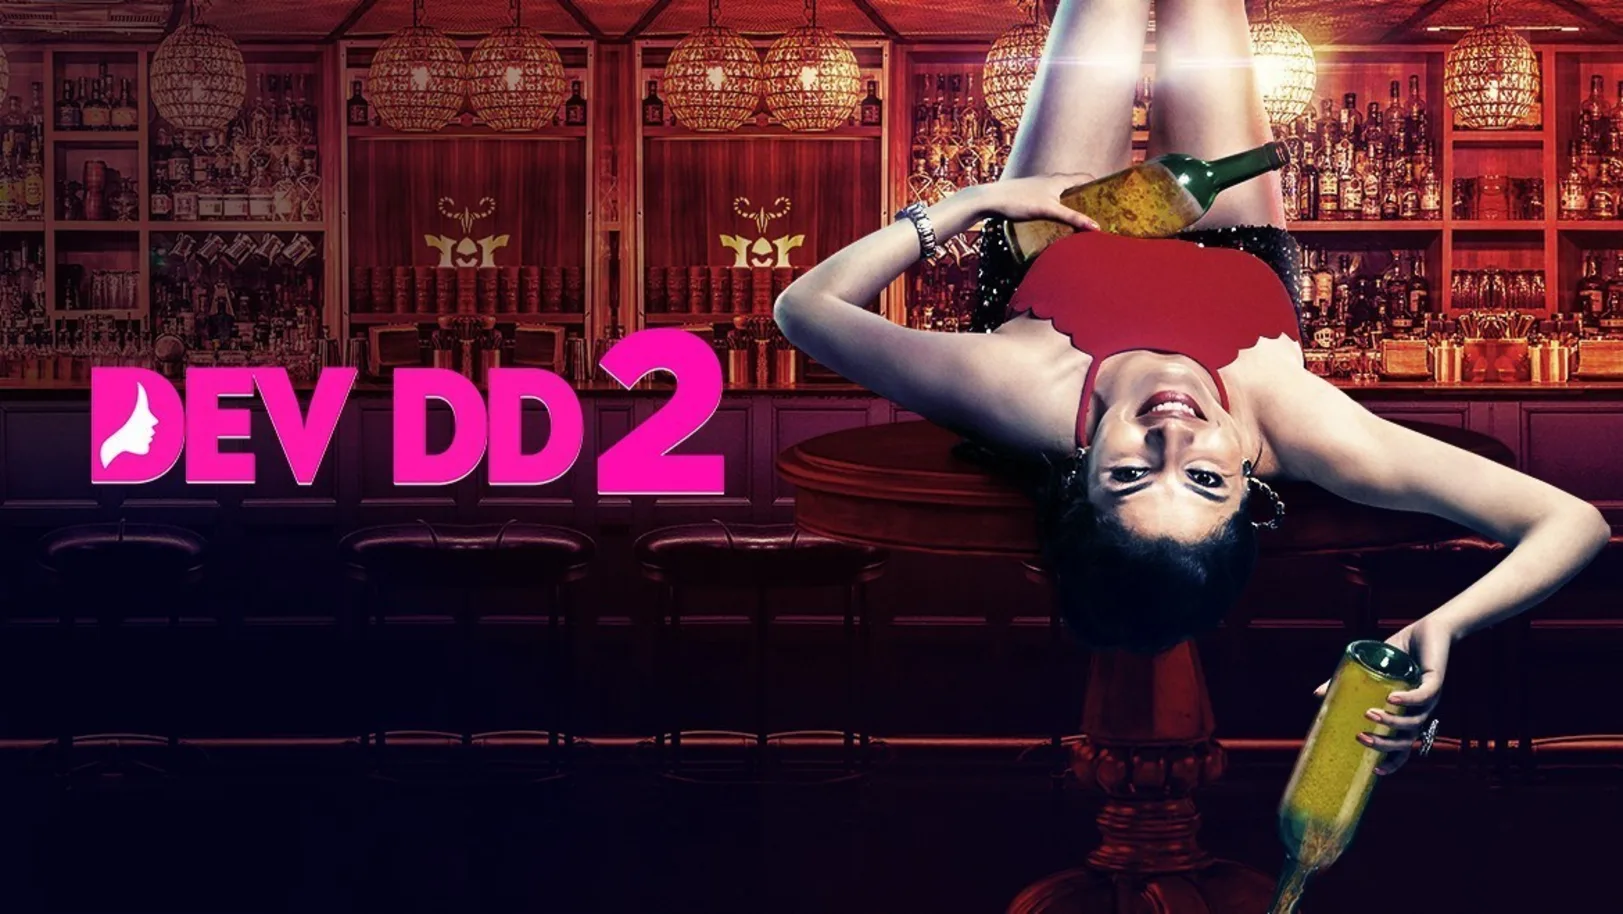 Dev DD 2 | Trailer 2